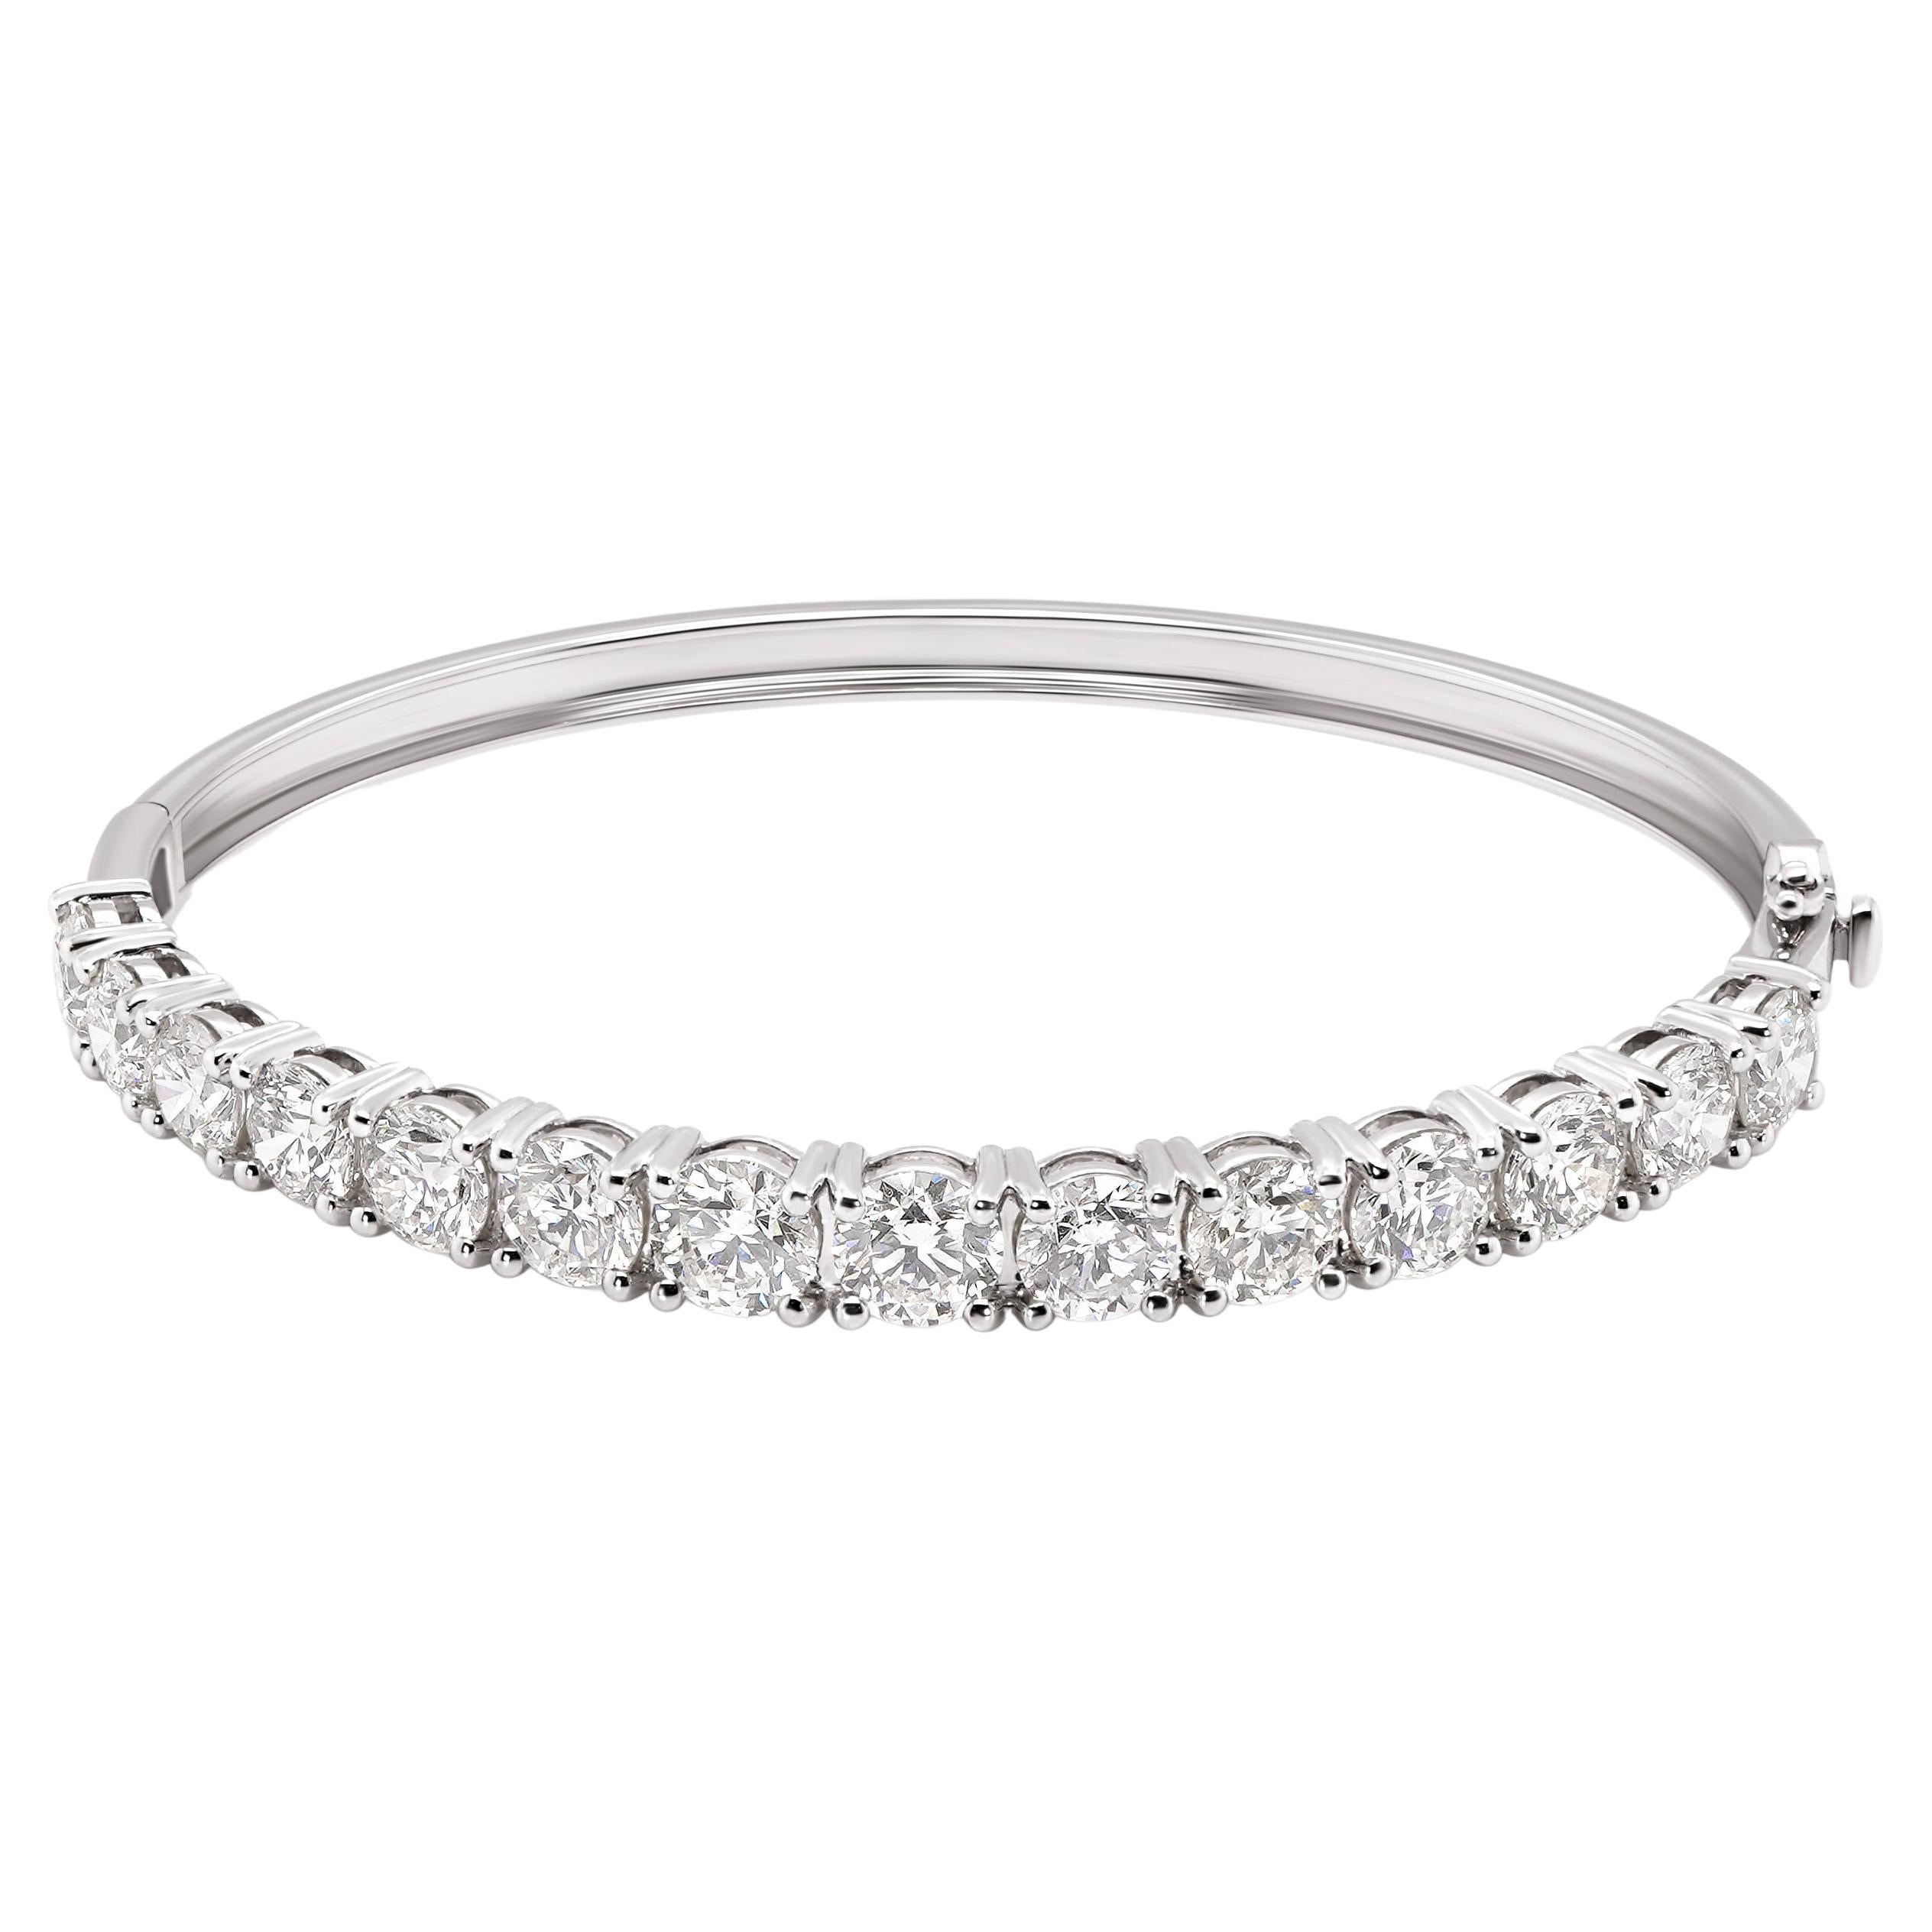 Bracelet d'infini en or 18 carats avec diamants ronds et brillants blancs de 7 carats